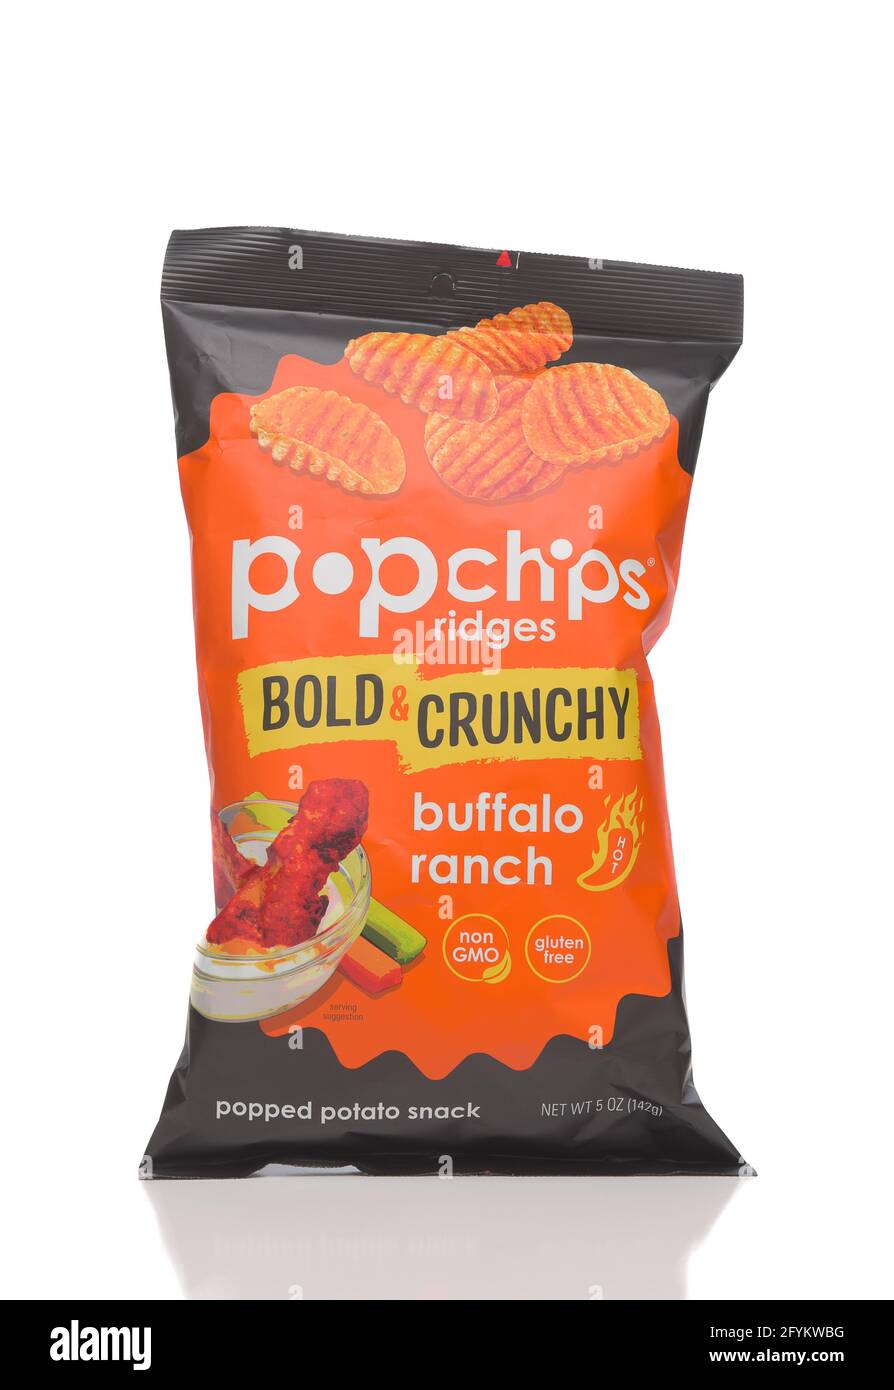 IRVINE, CALIFORNIA - 28 DE MAYO de 2021: Una bolsa de Pop Chips Crestas Negrita y Crunchy Buffalo Ranch, un bocadillo de patata. Foto de stock